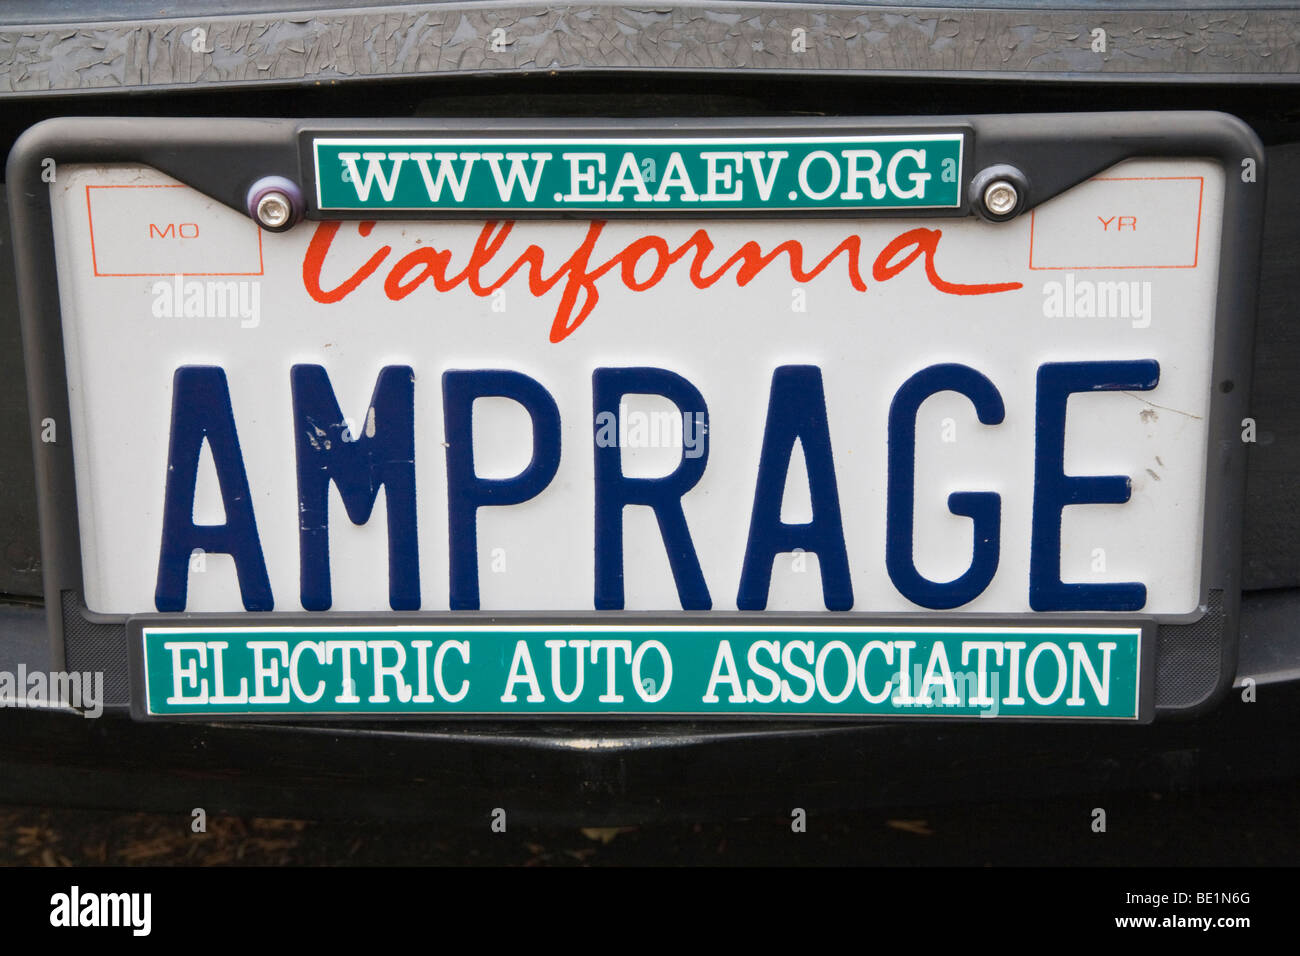 AMPRAGE' (Stromstärke) Nummernschild auf Elektro-Fahrzeug mit einem elektrischen Auto Association Kfz-Kennzeichenrahmen. Kalifornien, USA Stockfoto